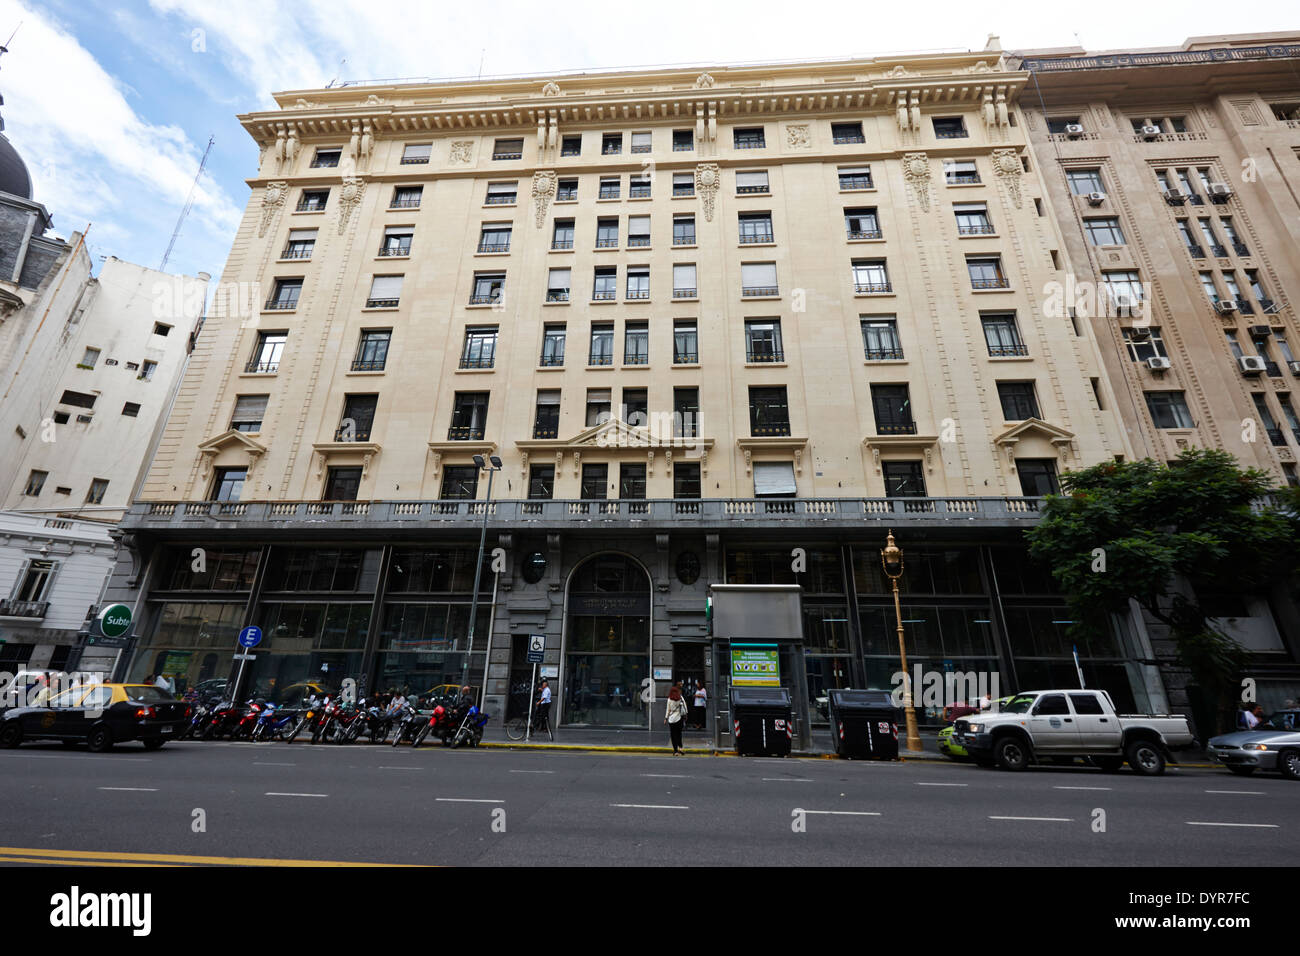 Superintendencia de servicios de salud former sud-america insurance company offices Buenos Aires Argentina Stock Photo